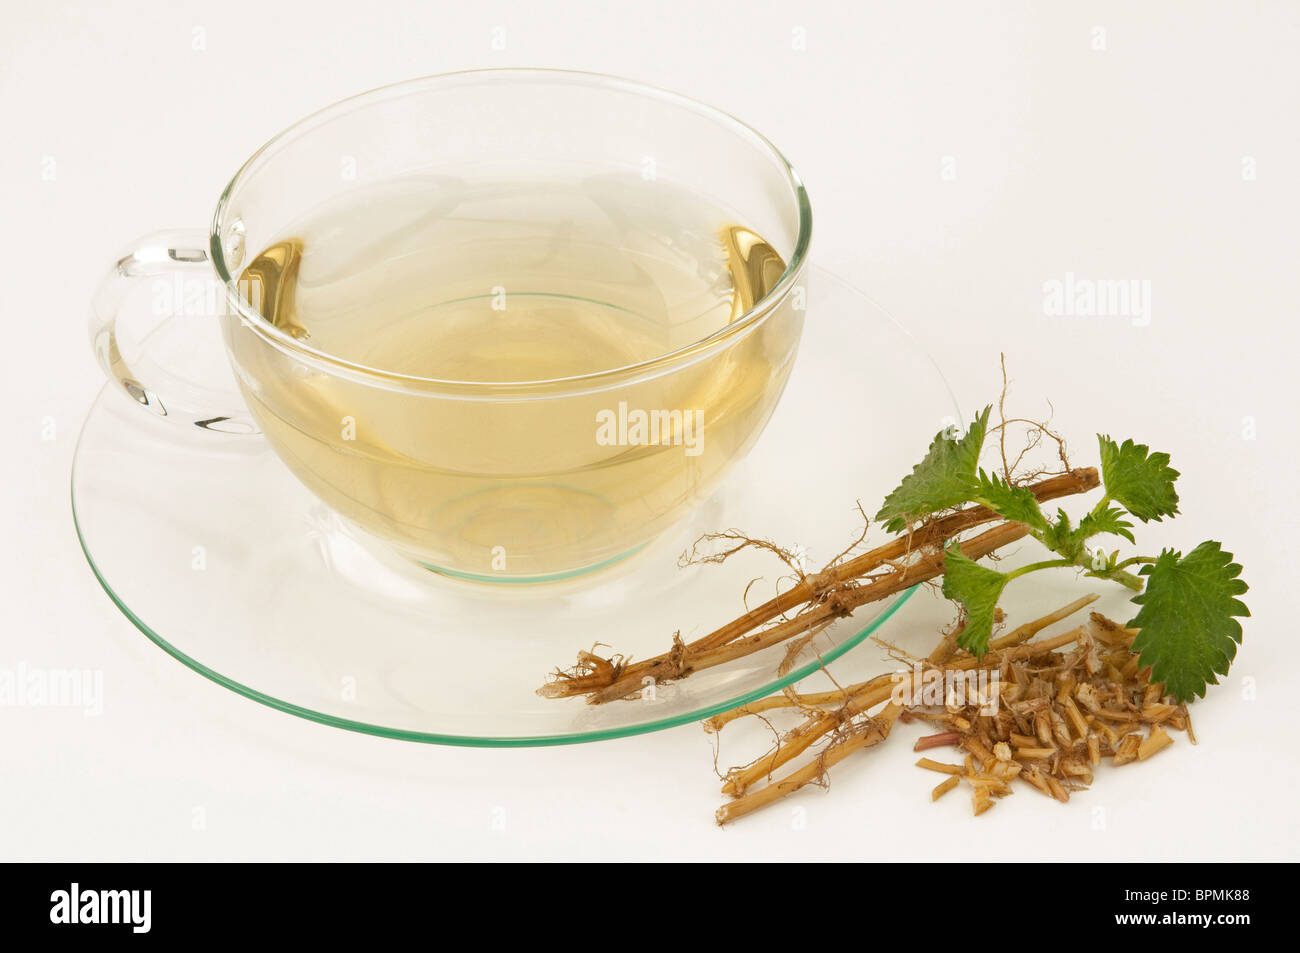 L'ortie (Urtica dioica). Une tasse d'infusion, feuilles et racines coupées, studio photo sur un fond blanc. Banque D'Images